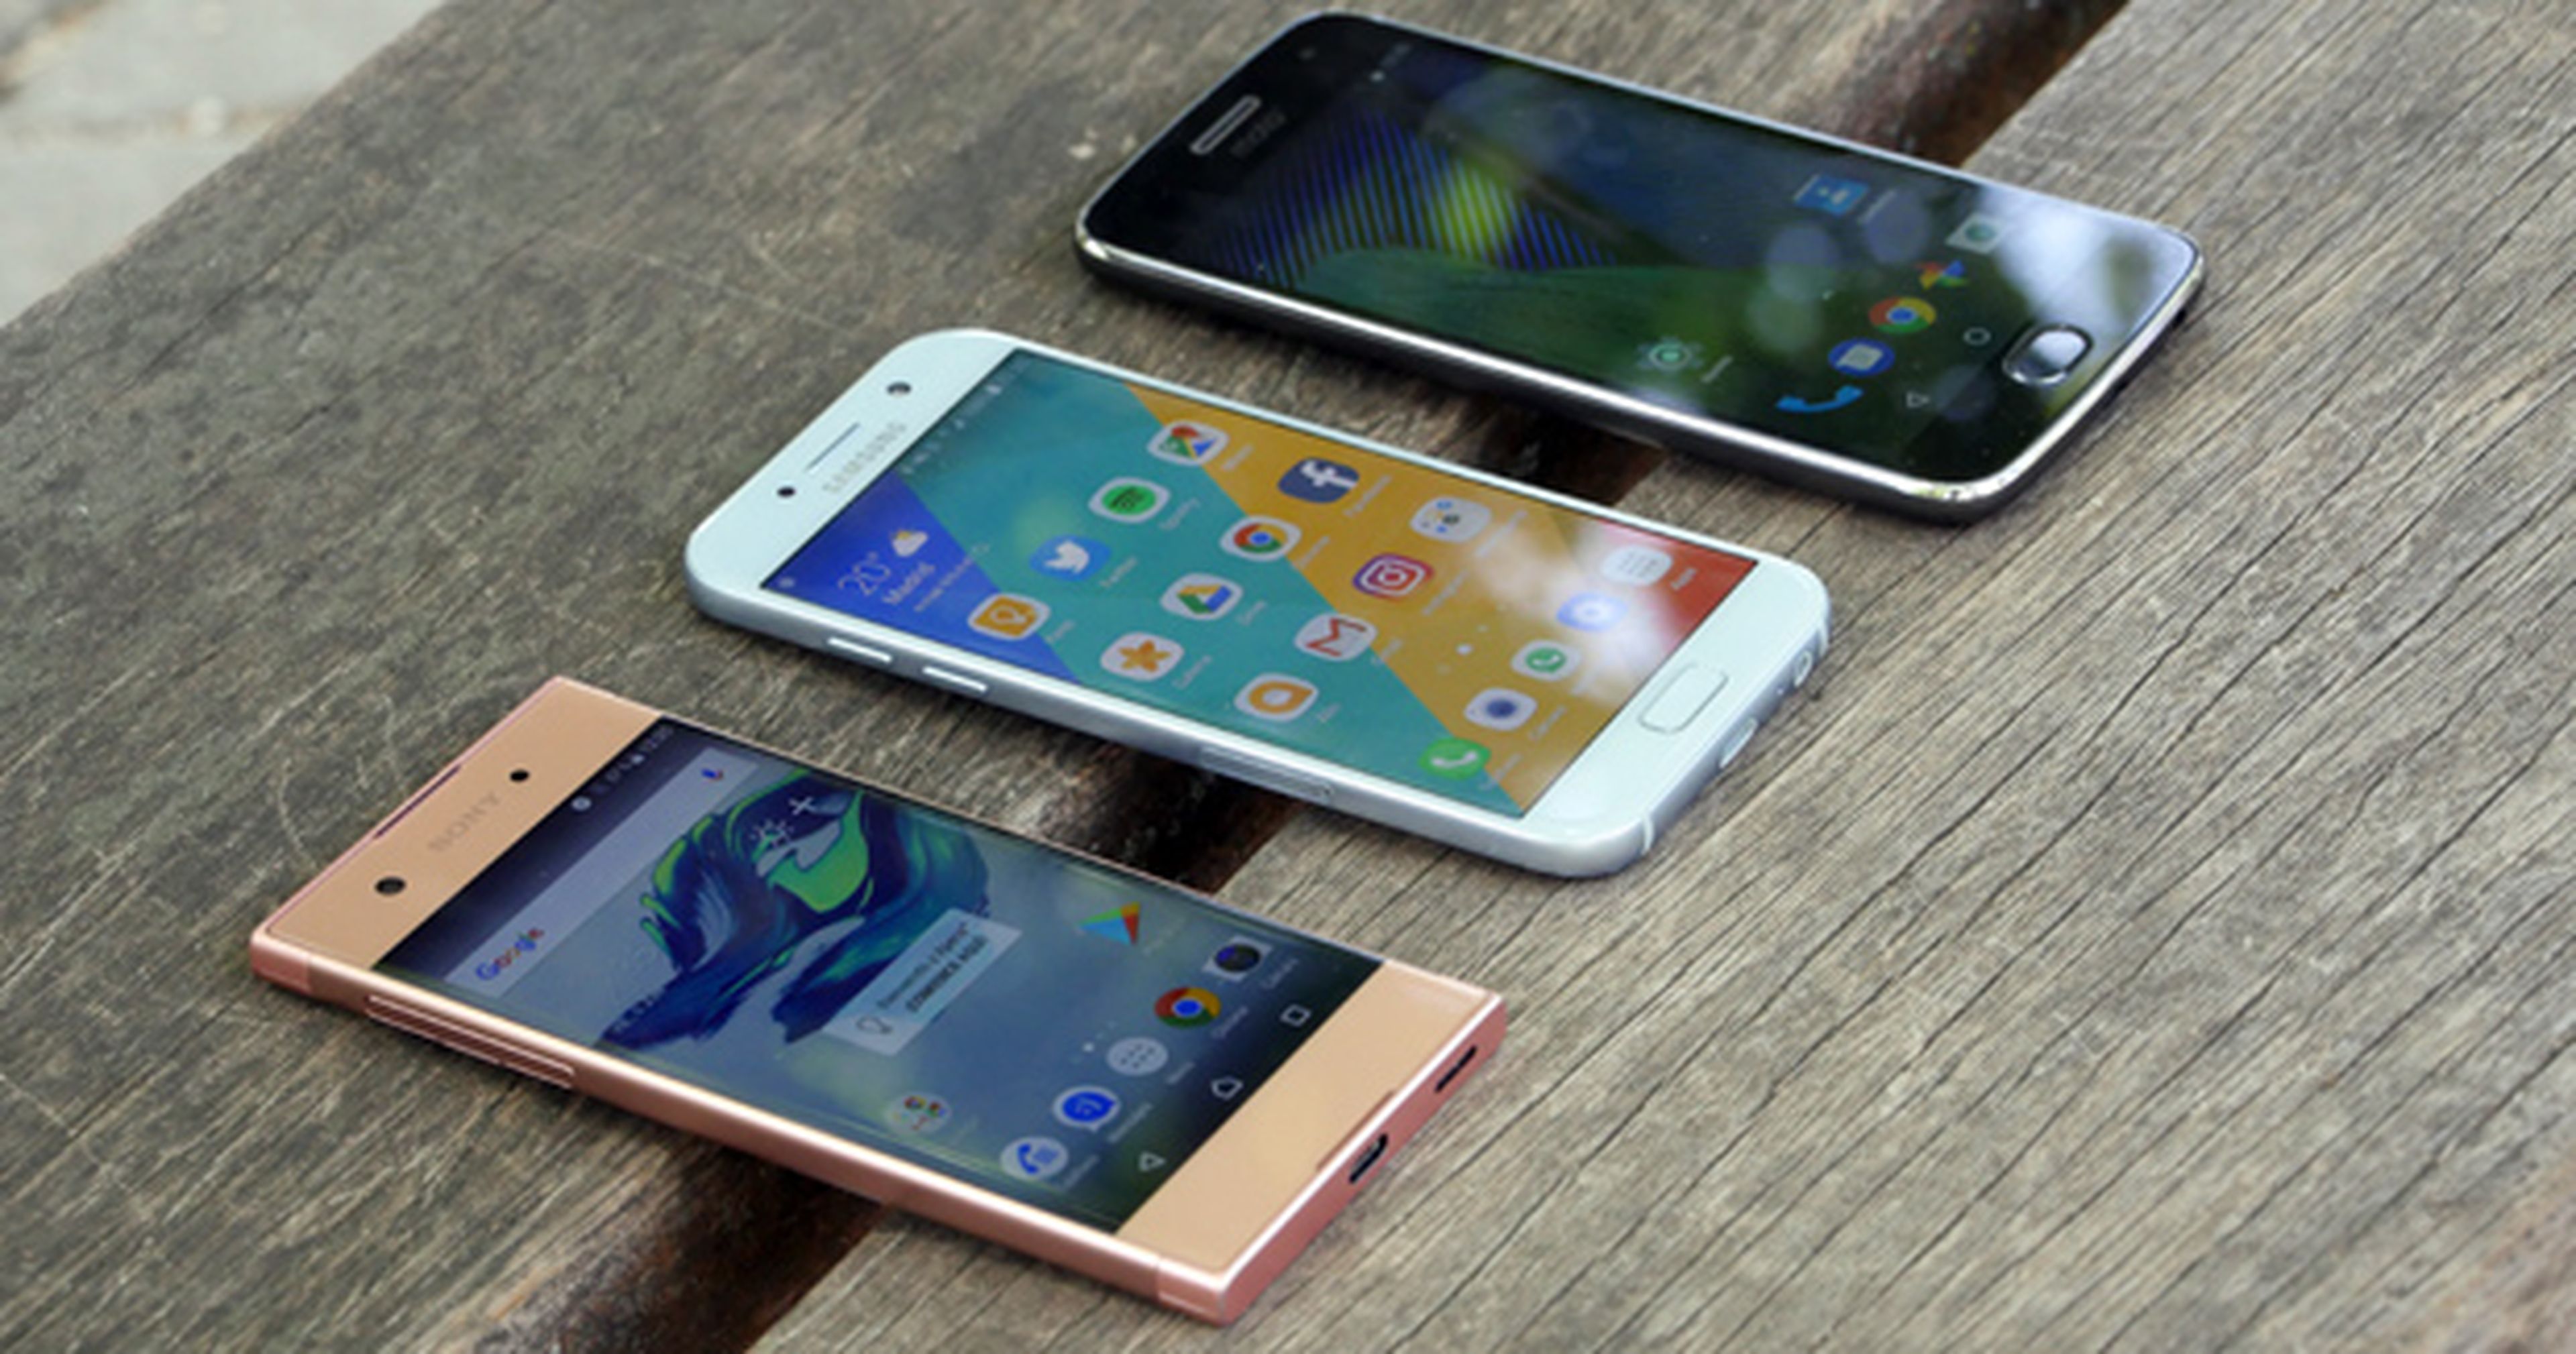 Comparativa Galaxy A5 vs Xperia XA1 vs Moto G5 Plus